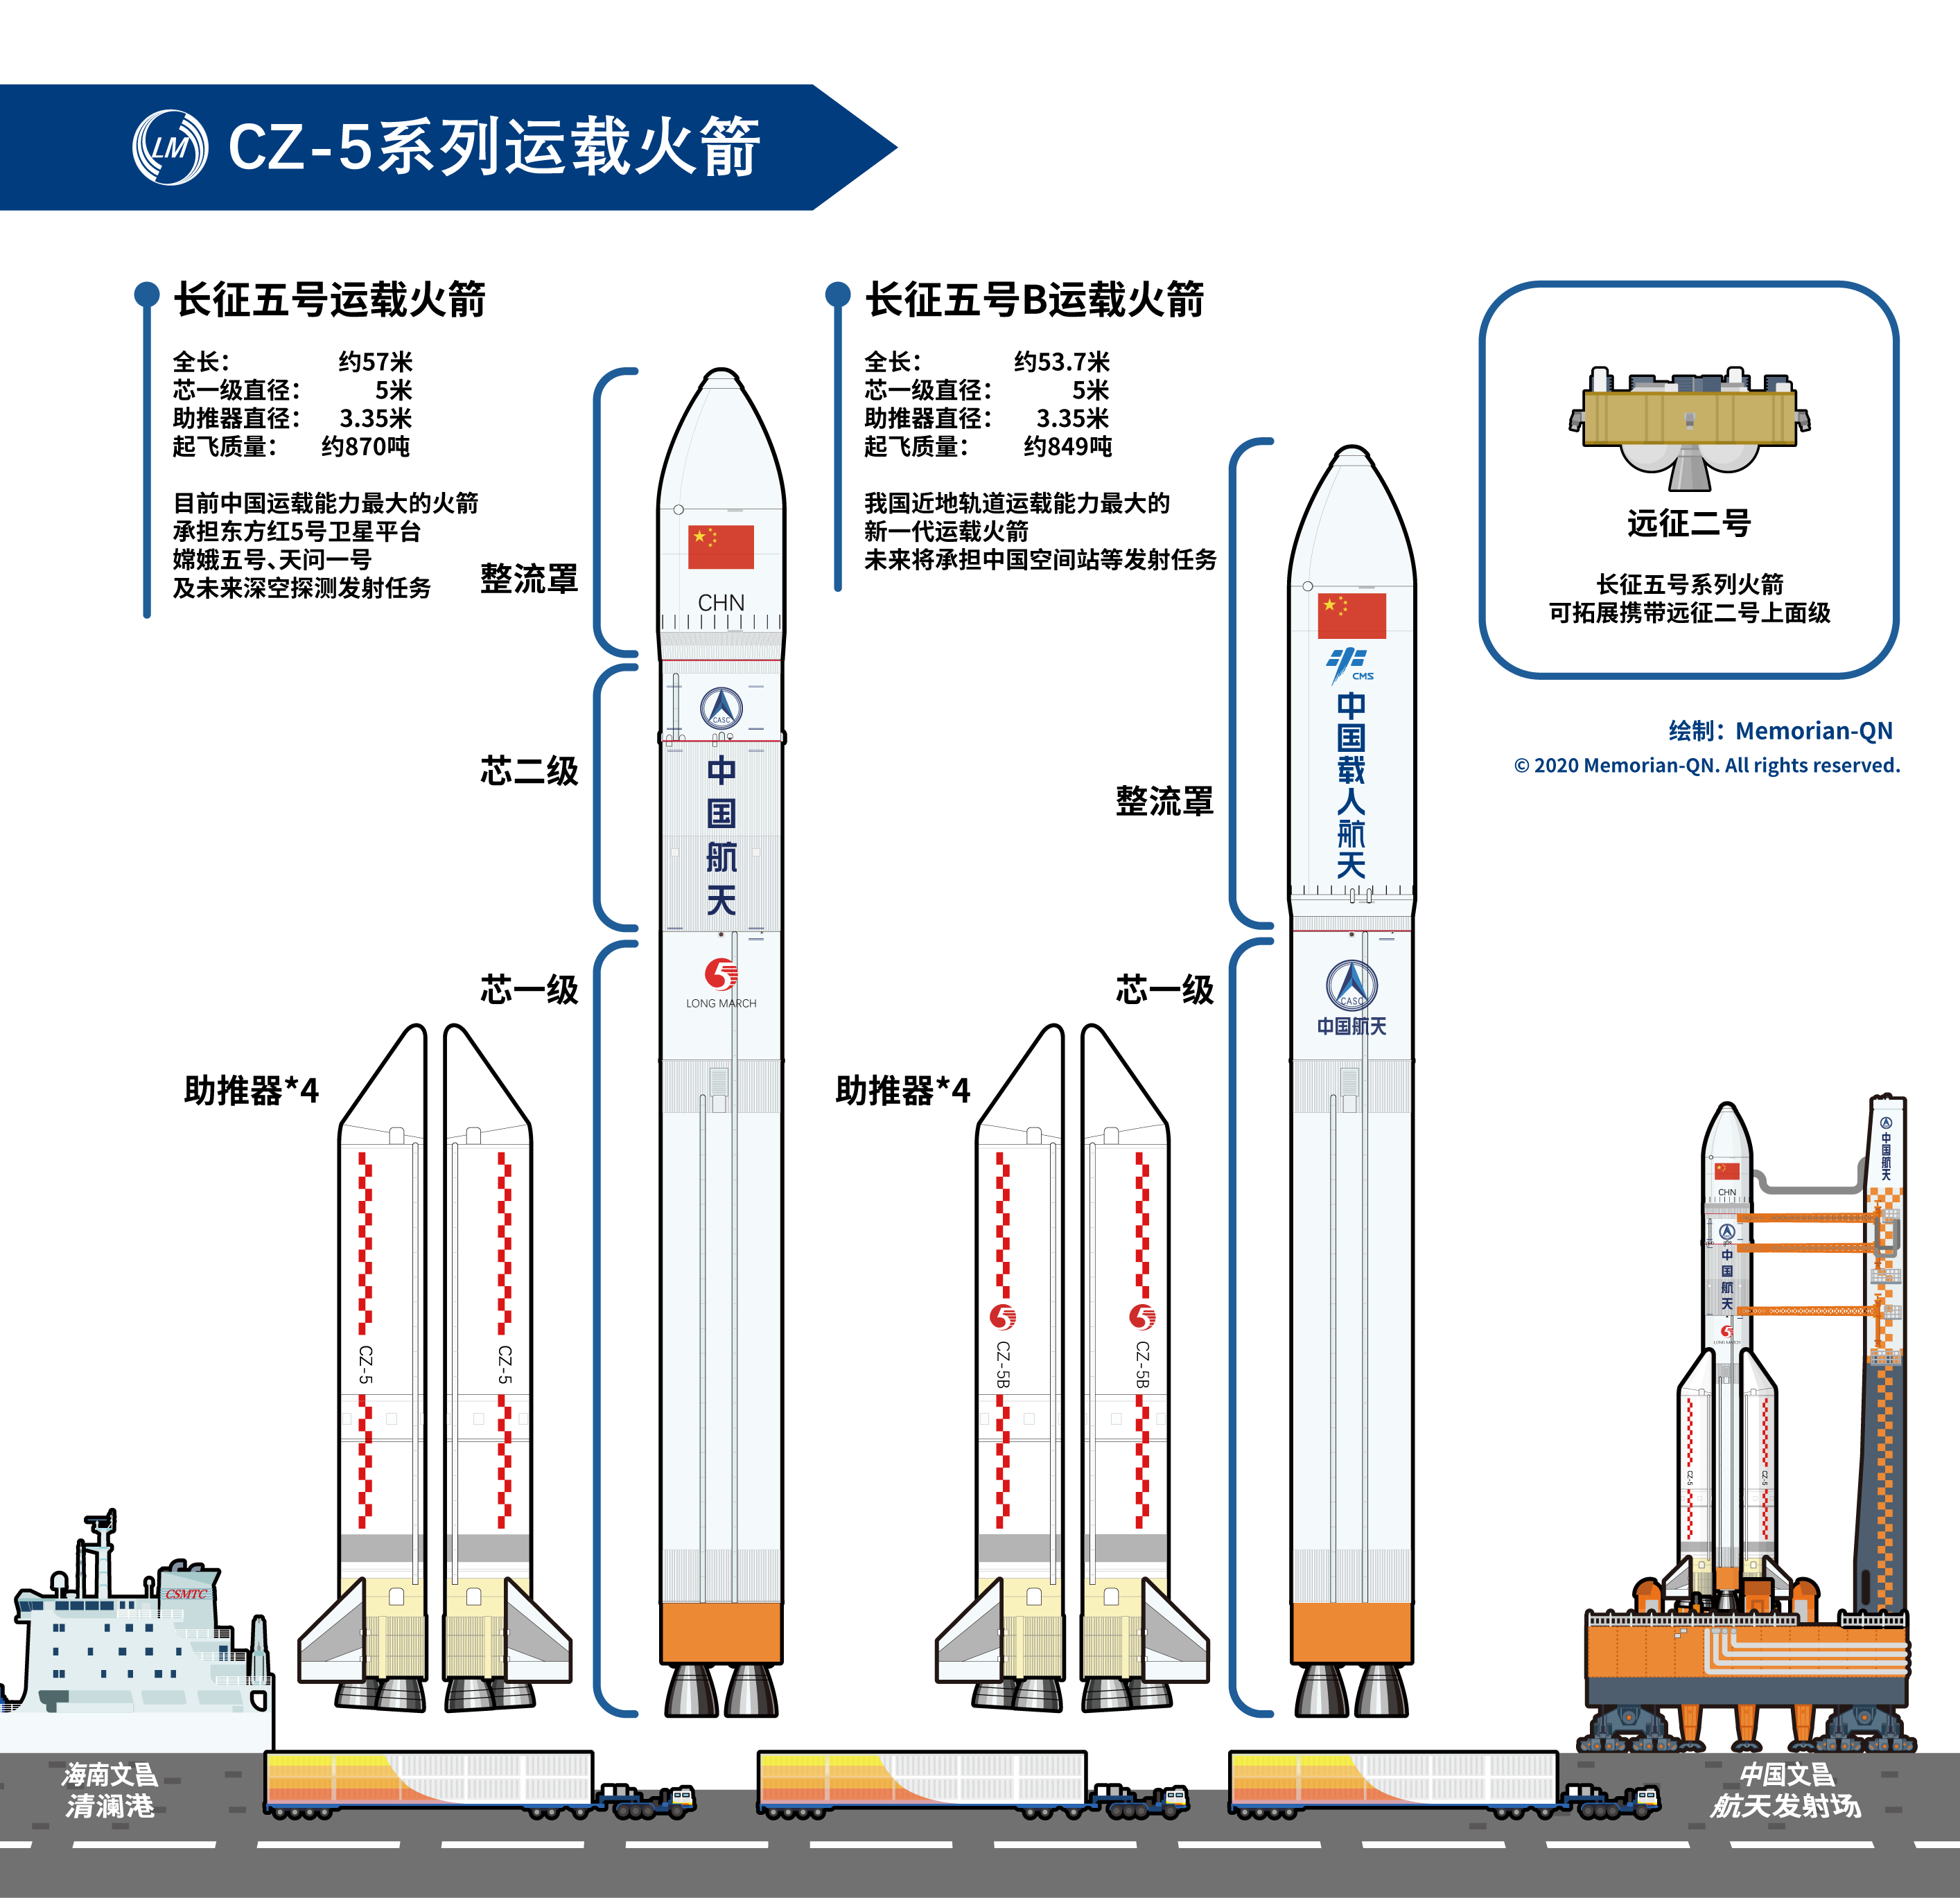 火箭结构图 简单图片